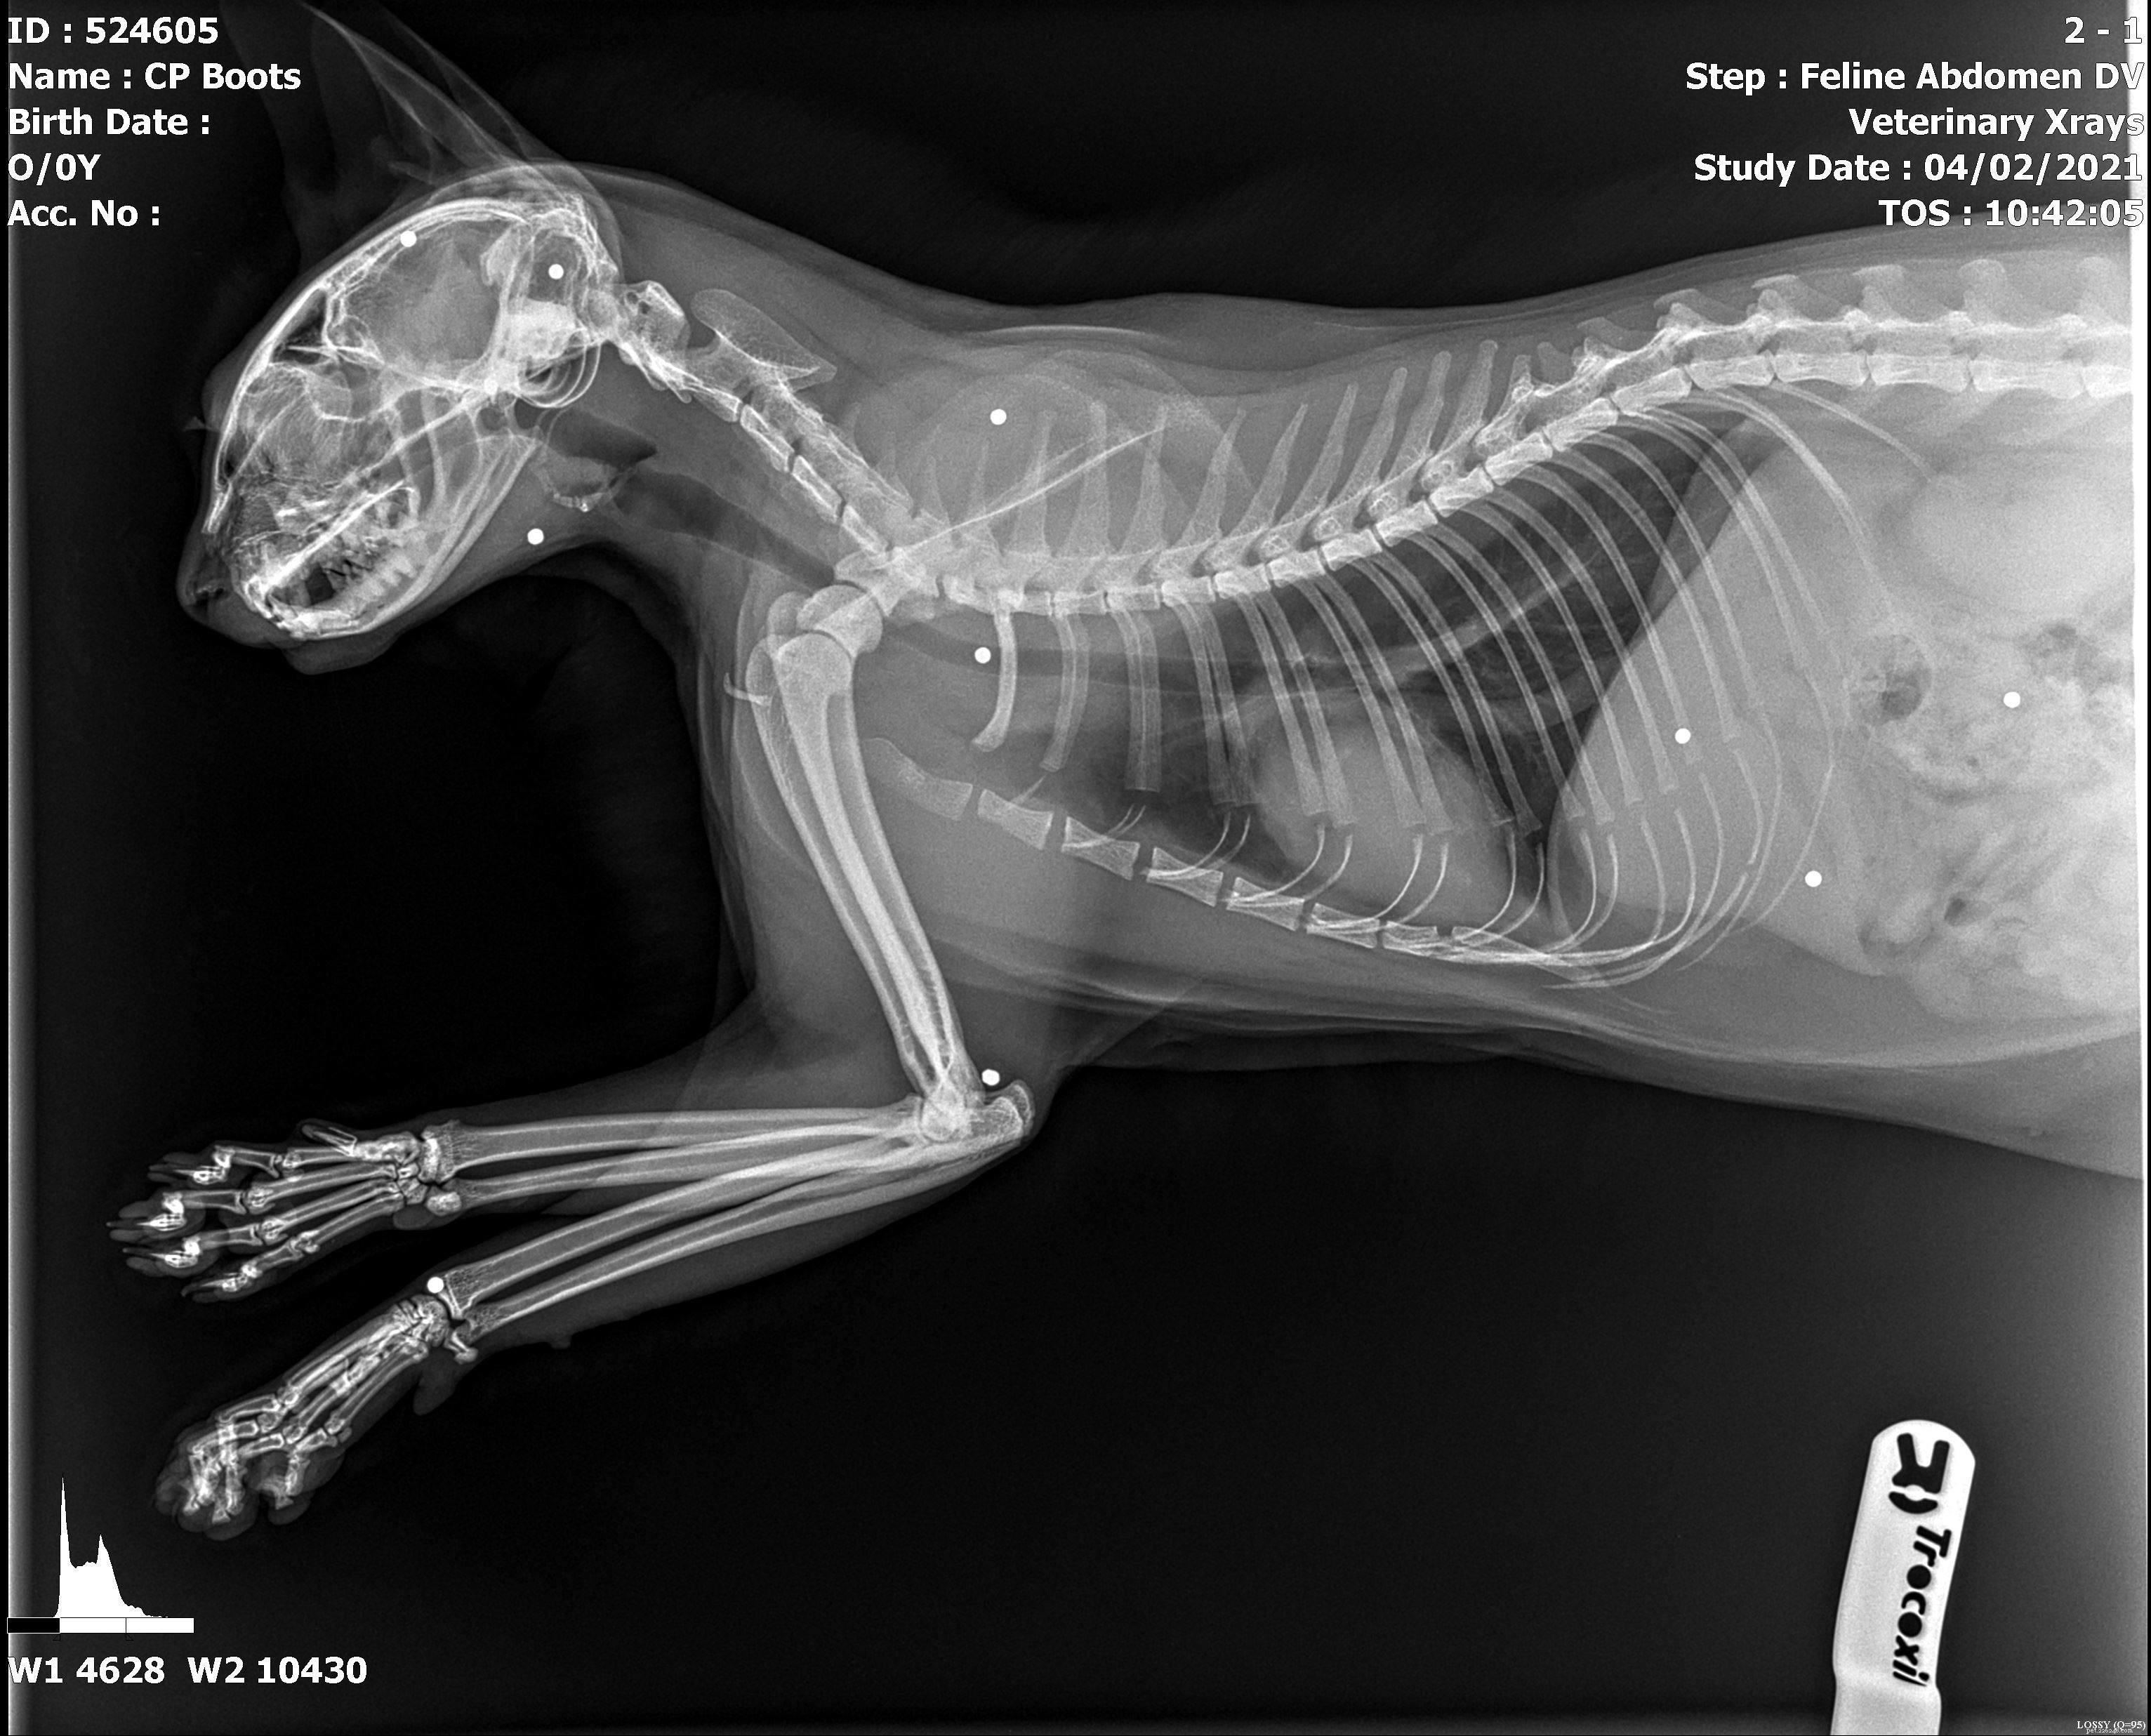 Boots tem sorte de estar viva depois que veterinários surpresos e cuidadores da Cats Protection descobrem que ela foi baleada 14 vezes com uma espingarda. 